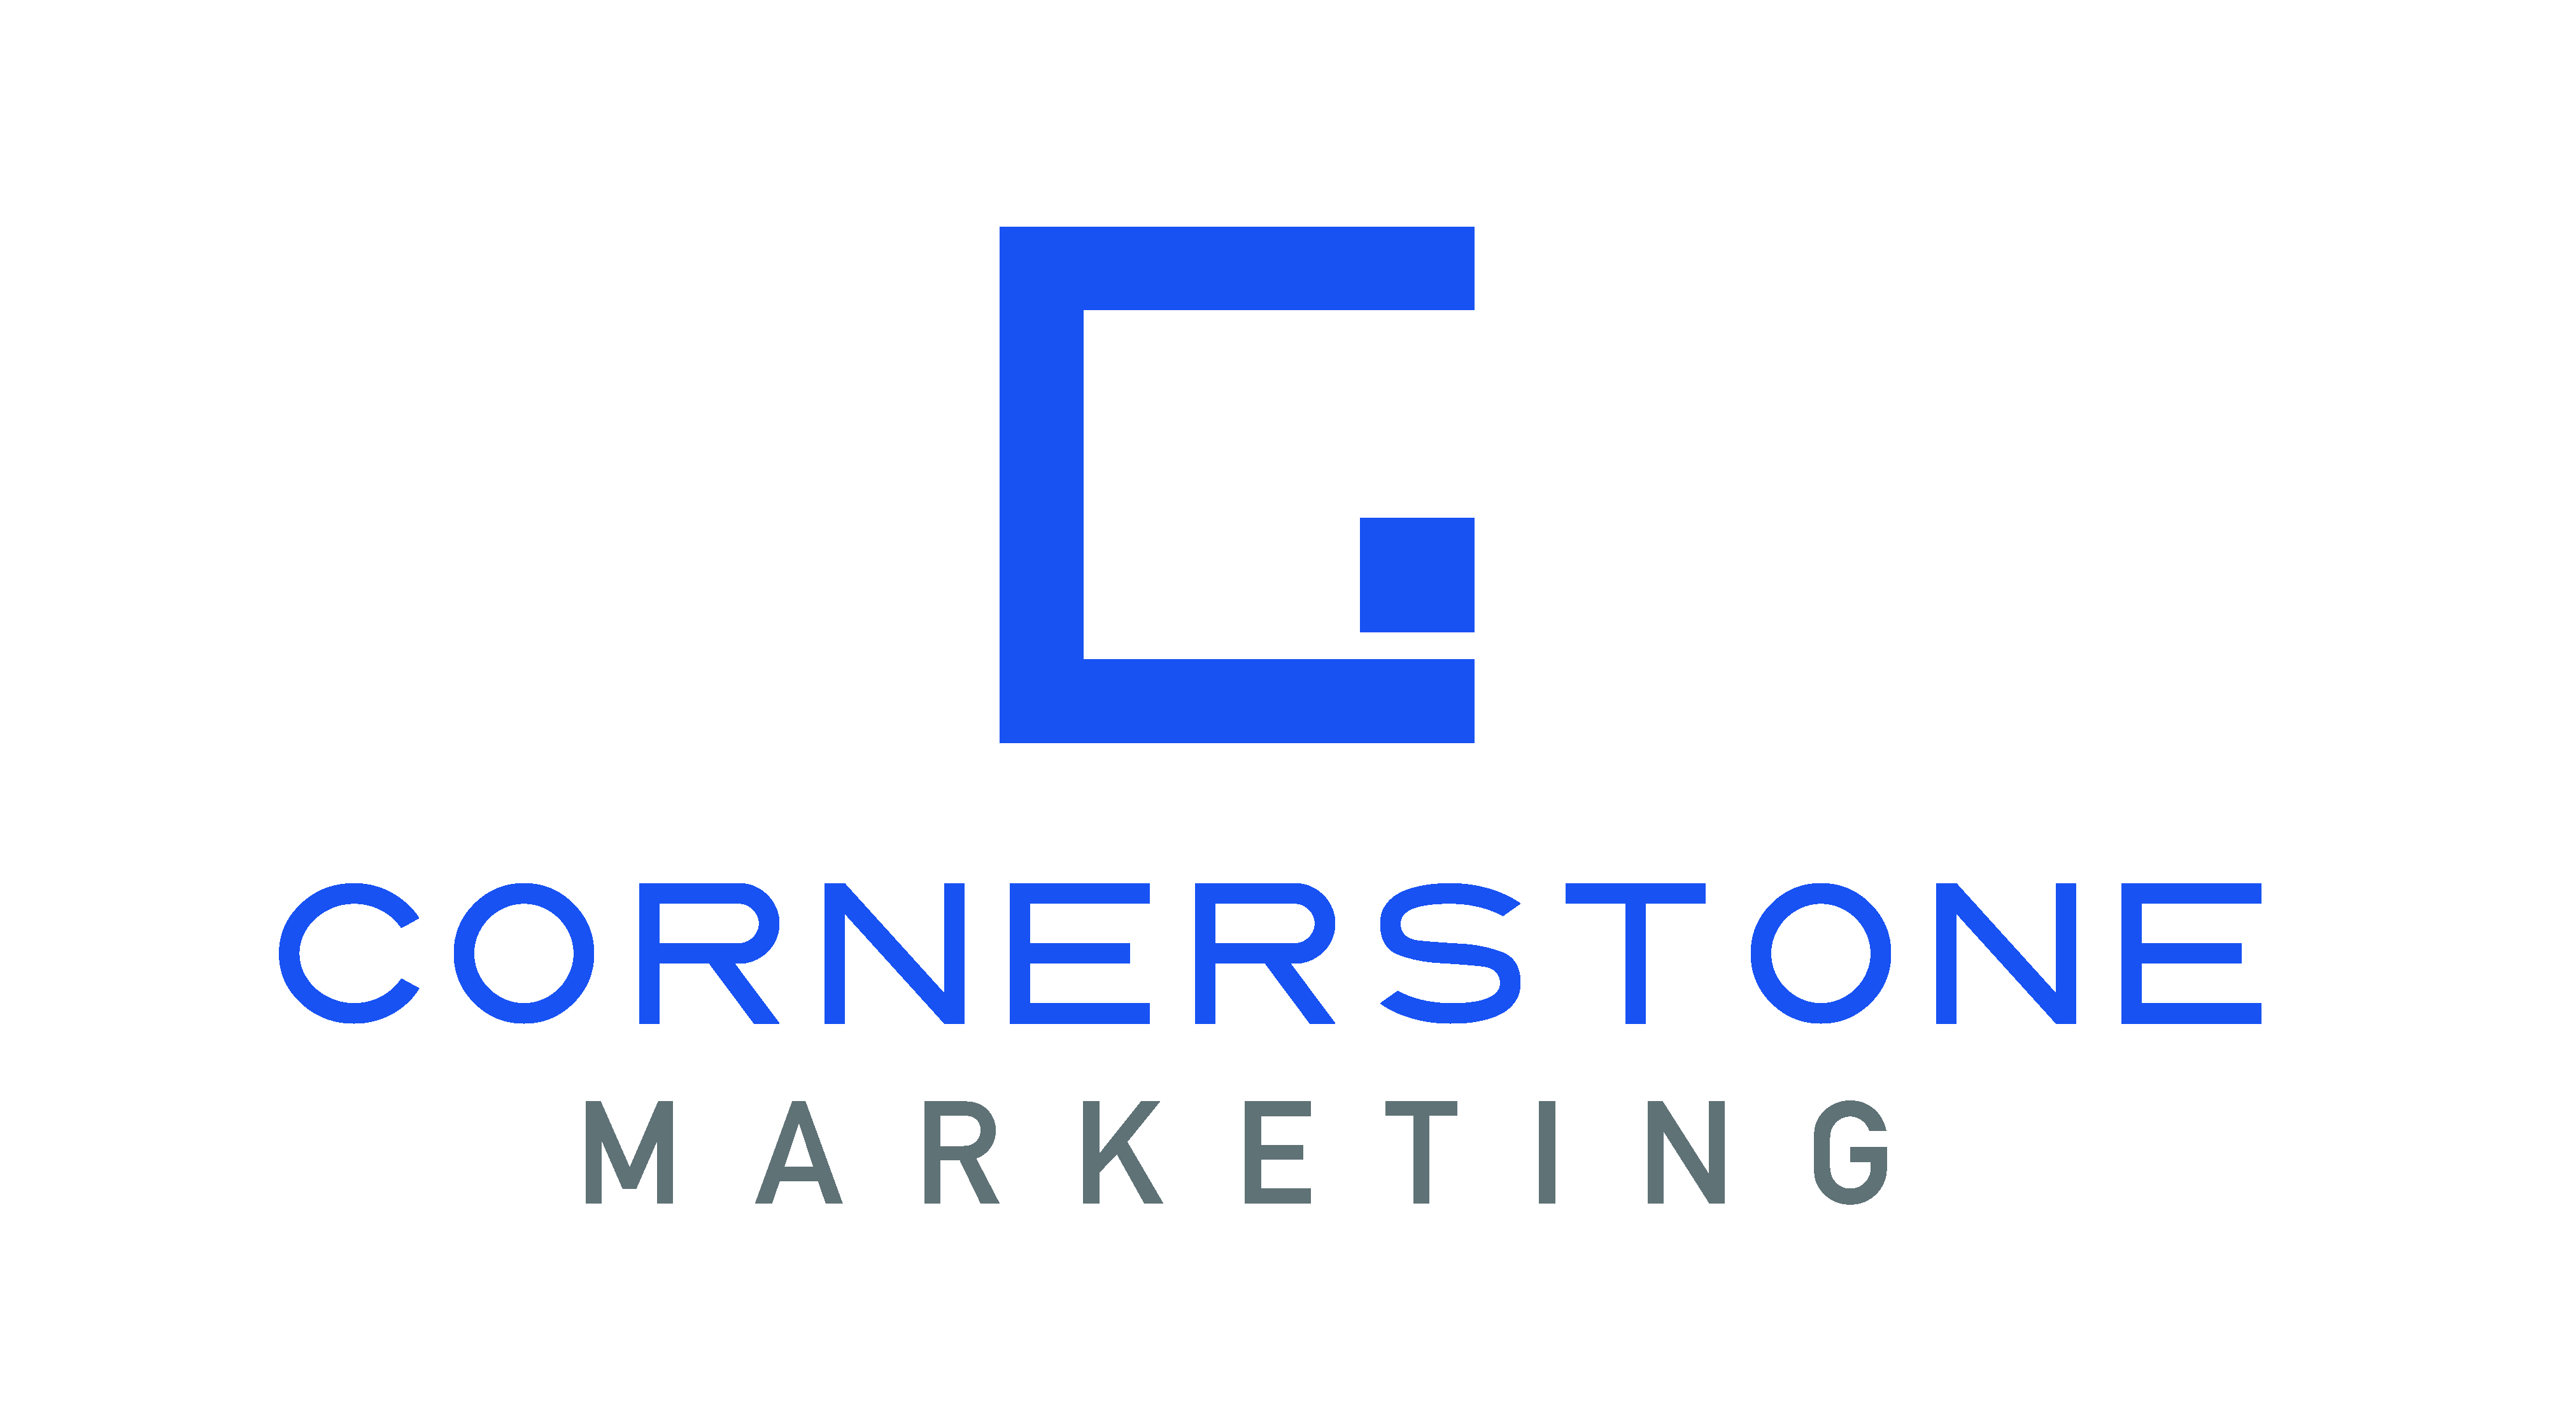 Cornerstone Marketing